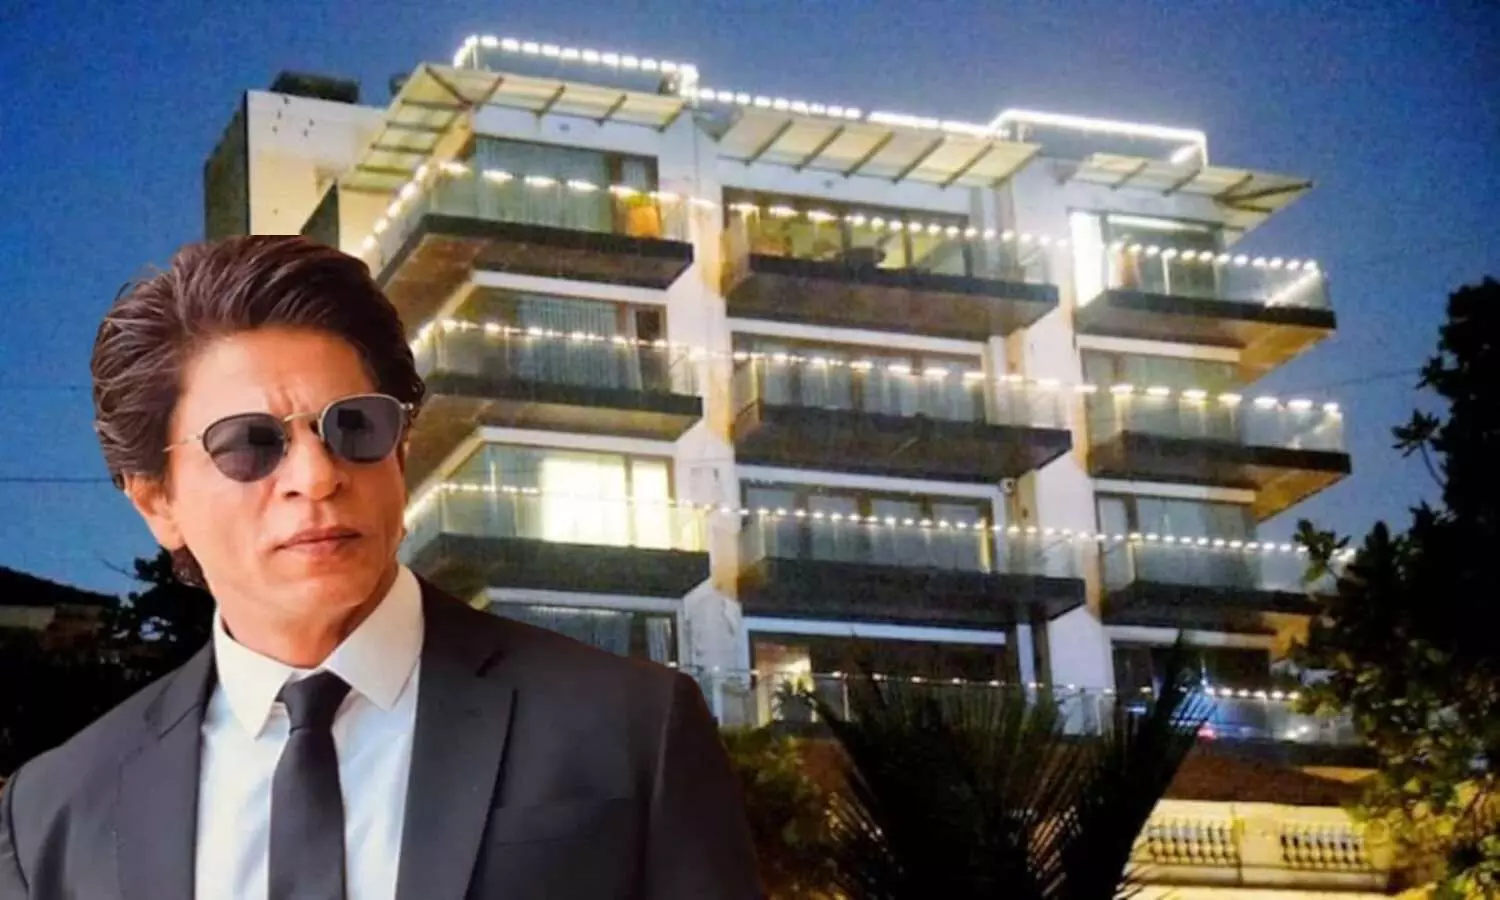 Actor Shah Rukh Khans house Mannat